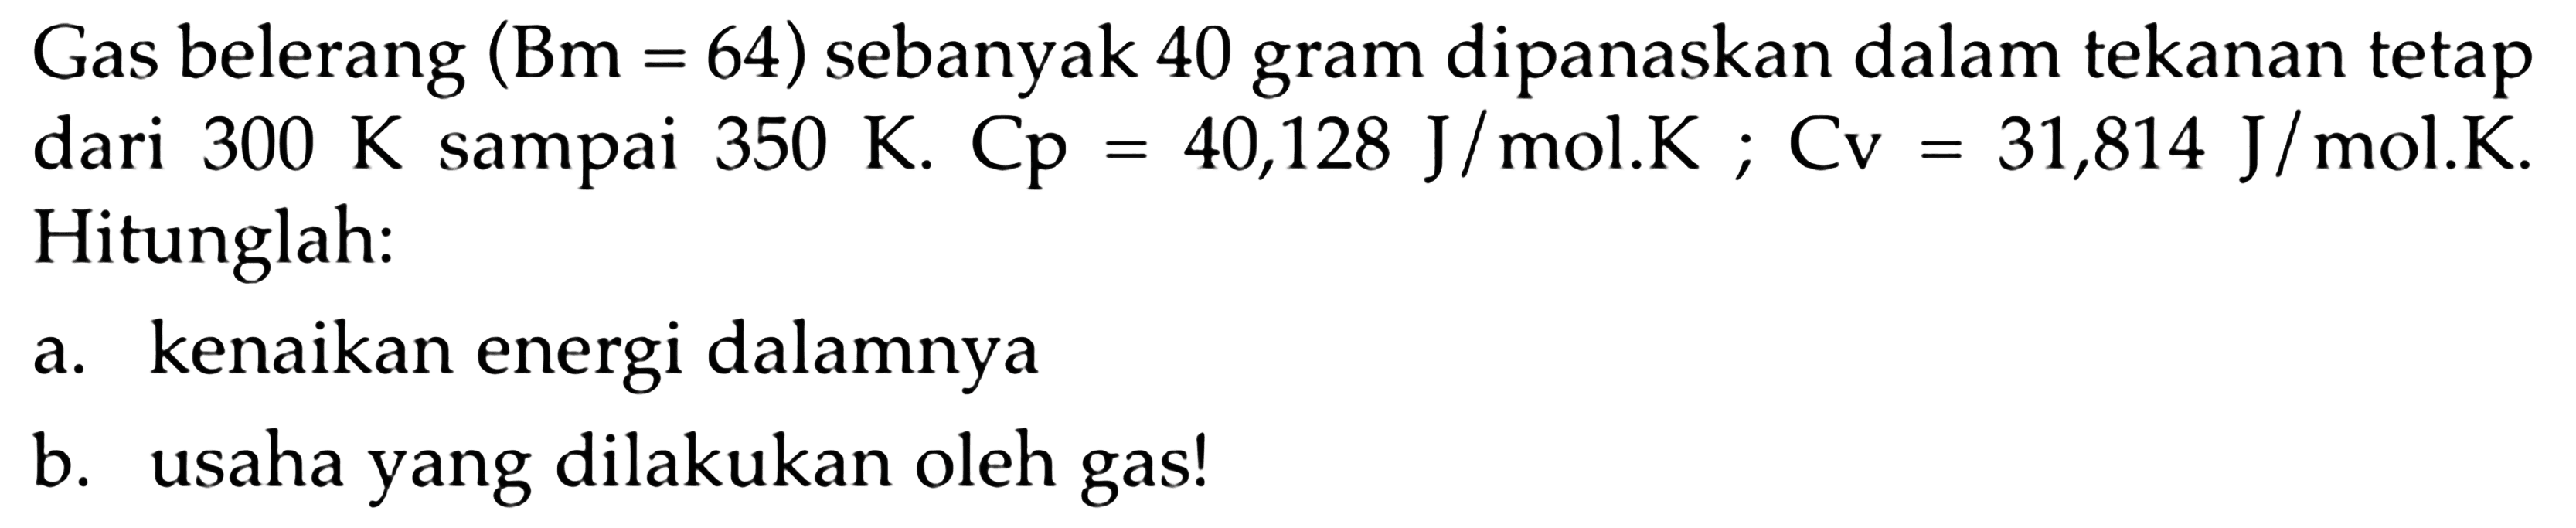 Gas belerang  (Bm=64)  sebanyak 40 gram dipanaskan dalam tekanan tetap dari  300 K sampai 350 K. Cp=40,128 J/mol.K; Cv=31,814 J/mol.K. Hitunglah: 
a. kenaikan energi dalamnya 
b. usaha yang dilakukan oleh gas! 